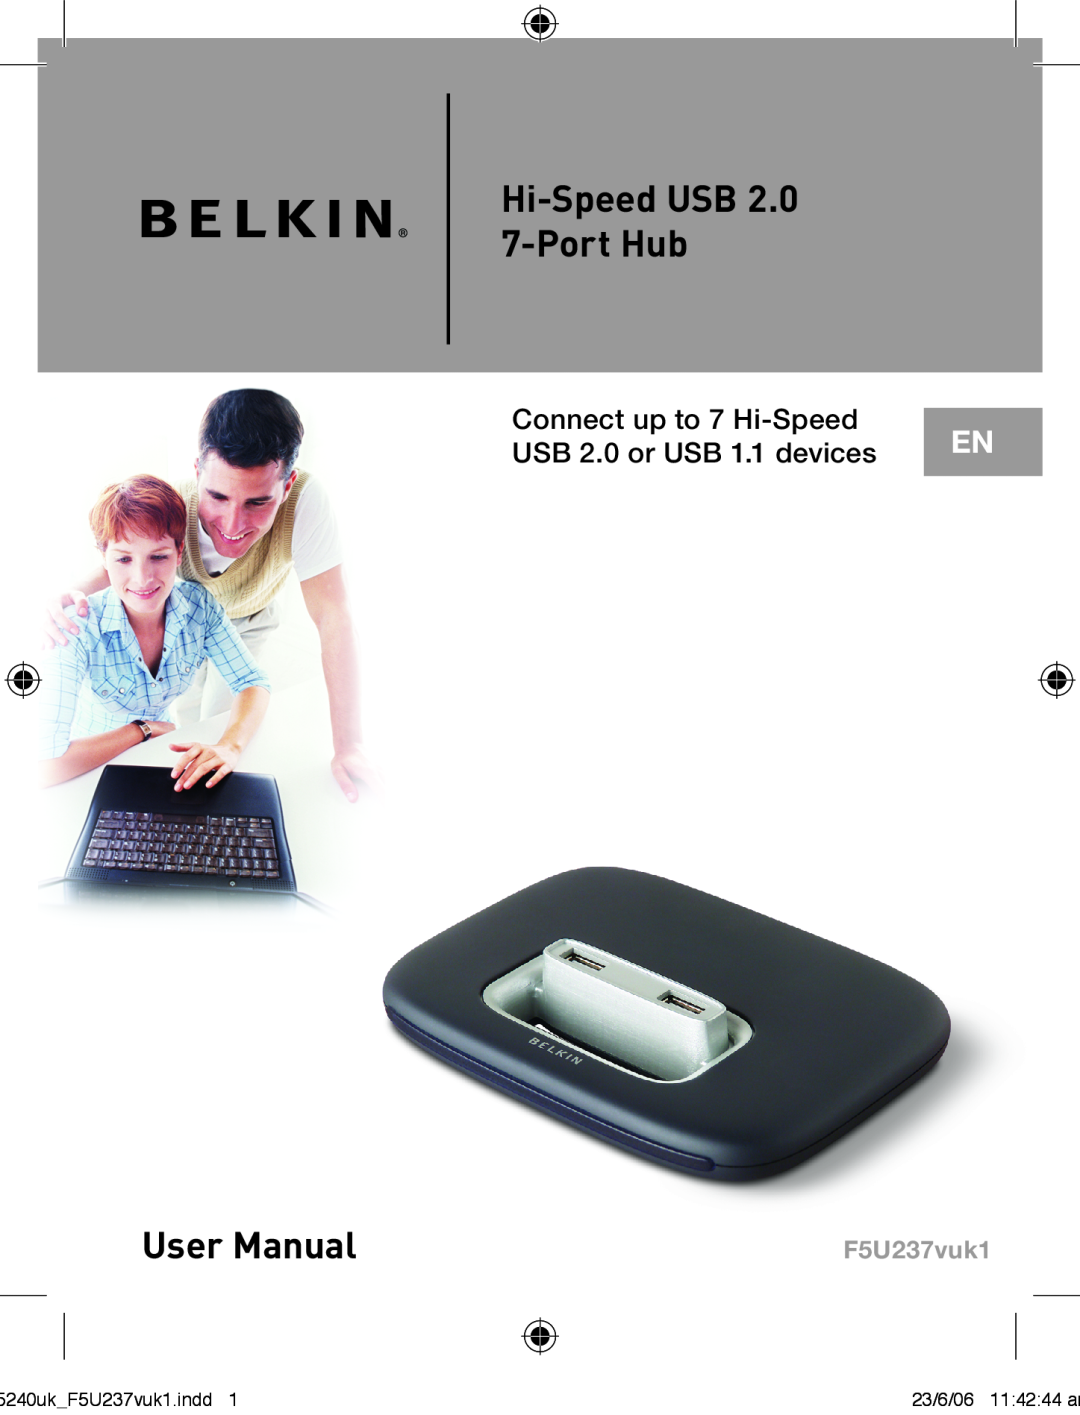 Belkin F5U237VUK1 user manual Hi-Speed USB 2.0 7-Port Hub, Connect up to 7 Hi-Speed USB 2.0 or USB 1.1 devices, F5U237vuk1 